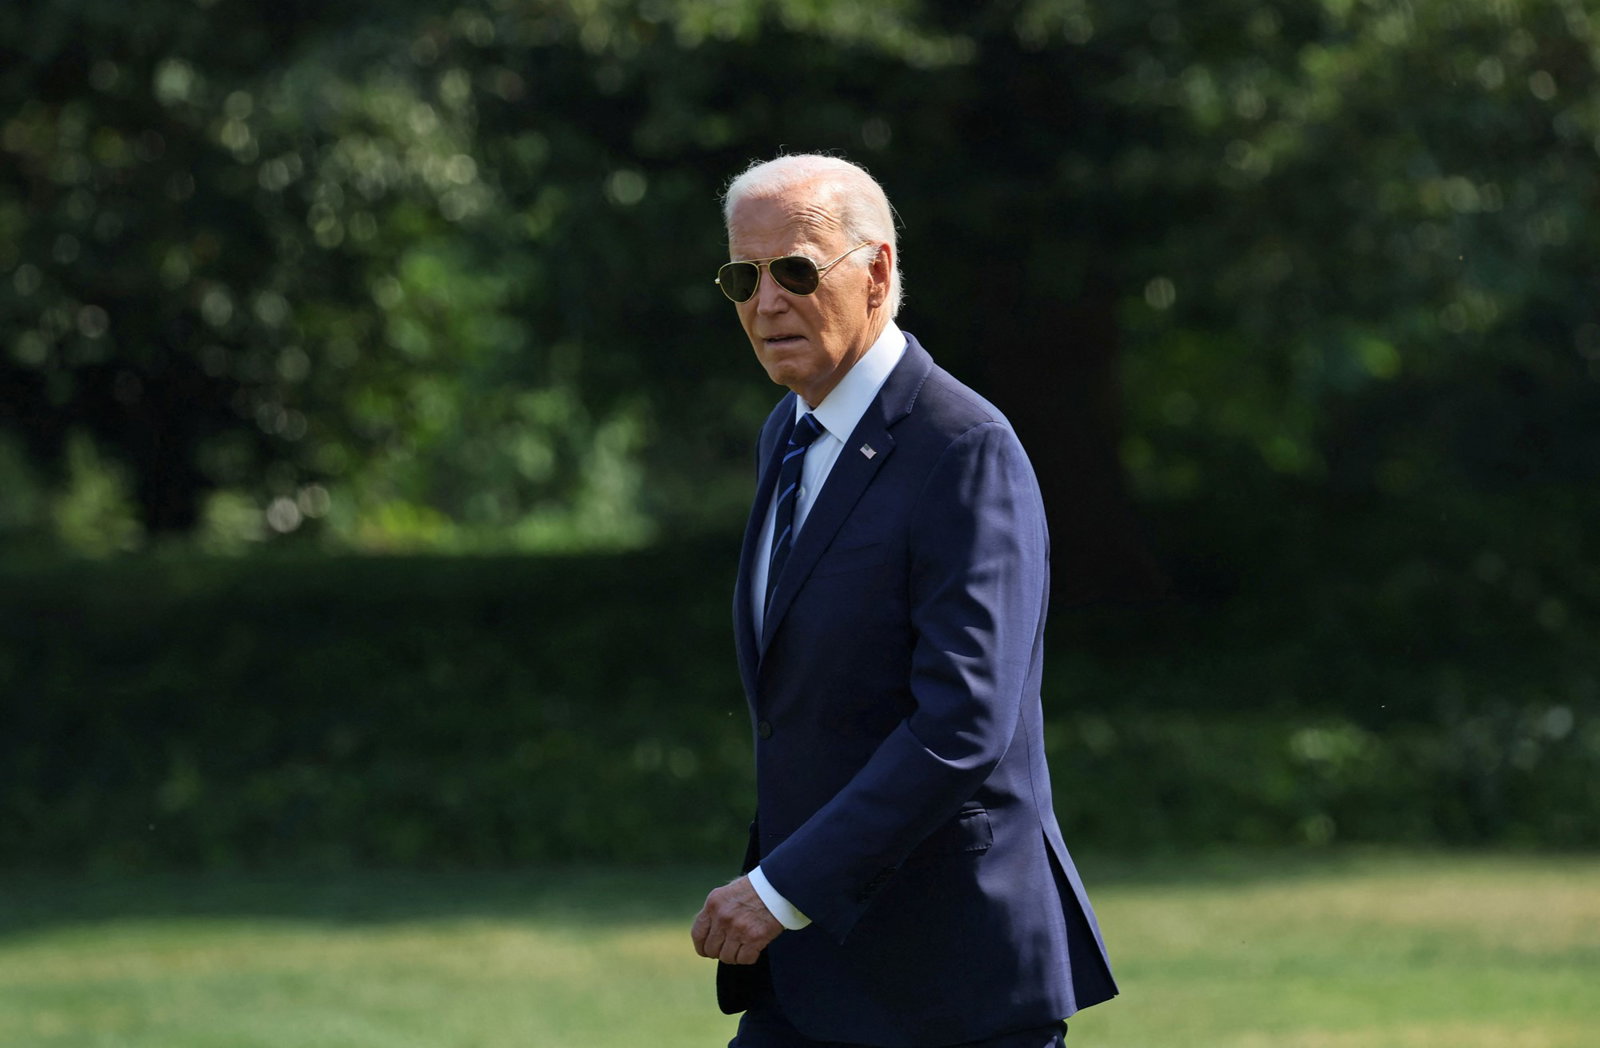 Joe Biden walks outside in the garden in a suit and sunglasses